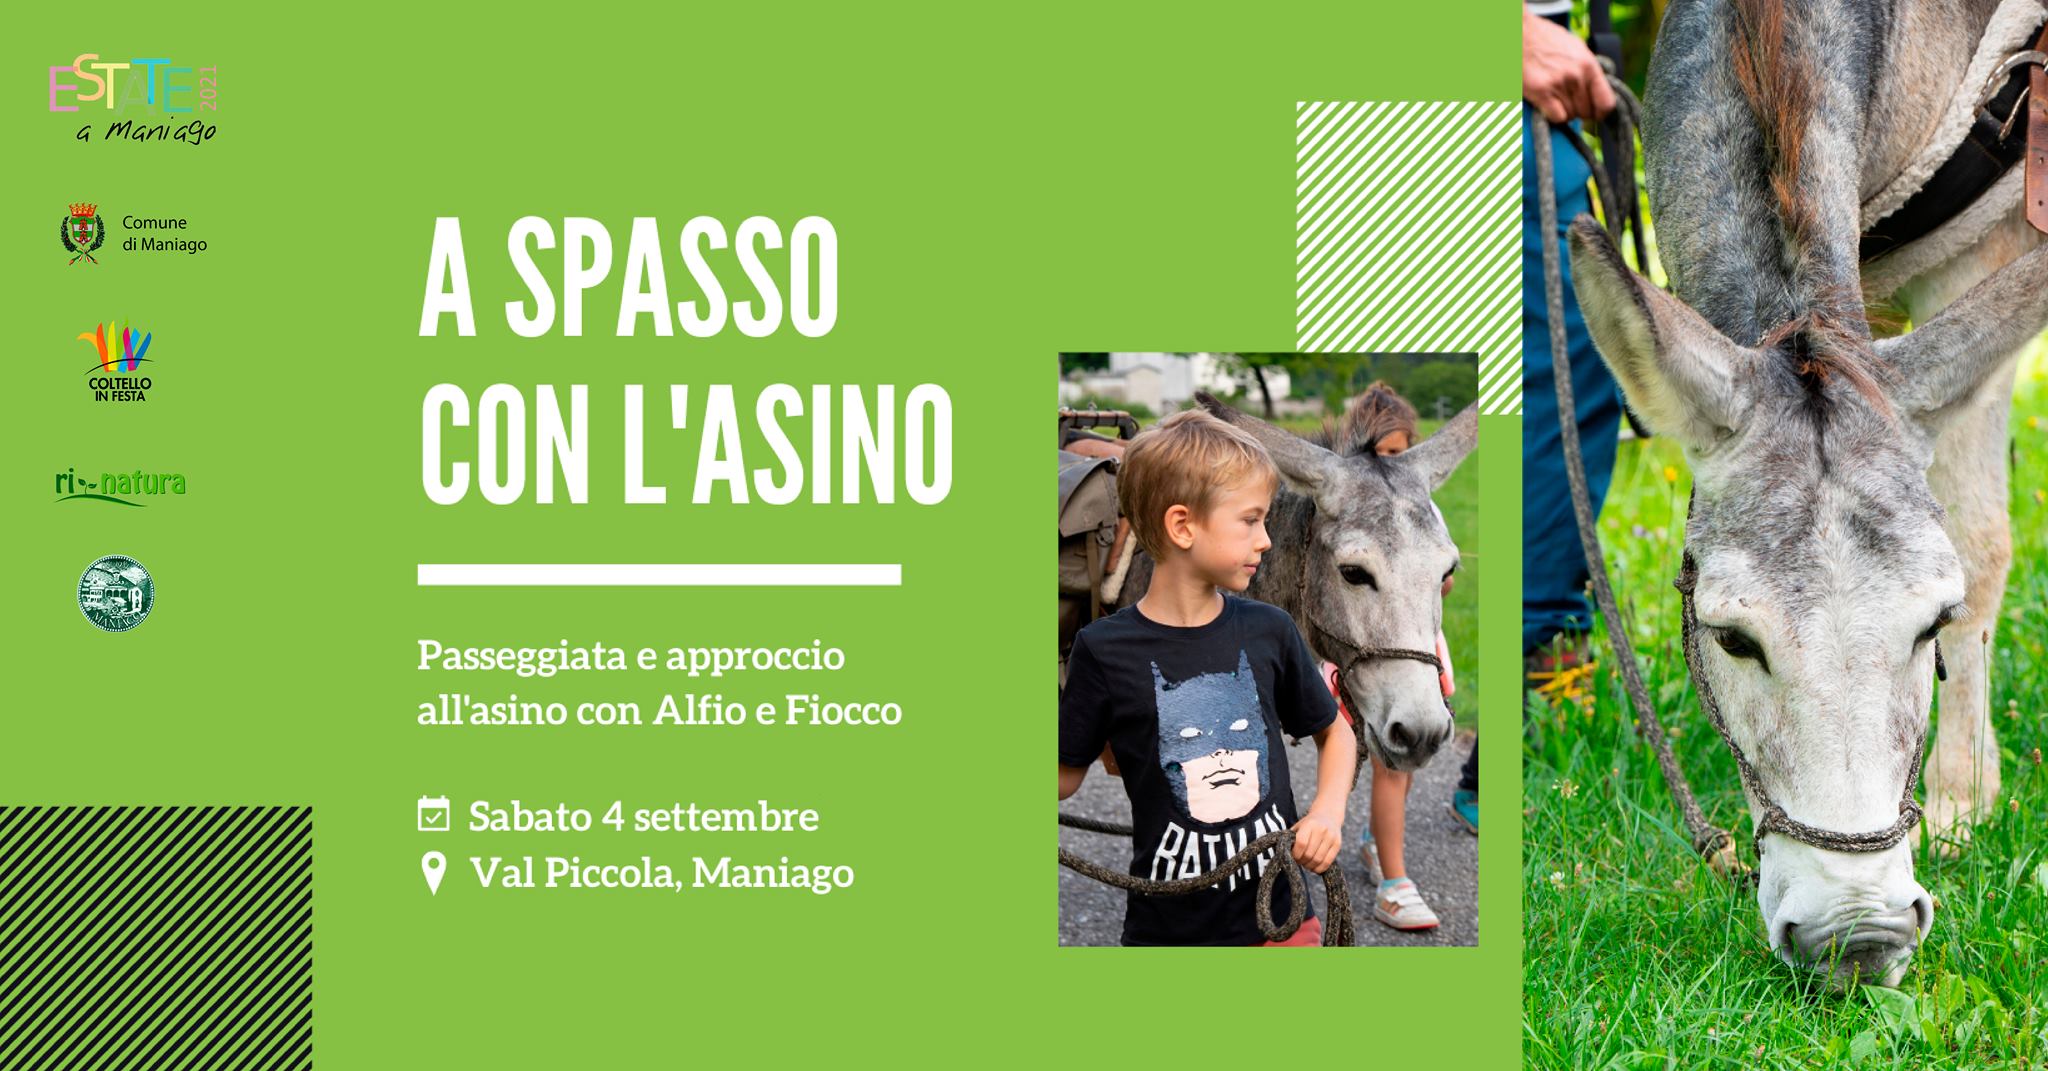 A spasso con l'Asino in ValPiccola • Rinatura2021 - EventiFVG.it